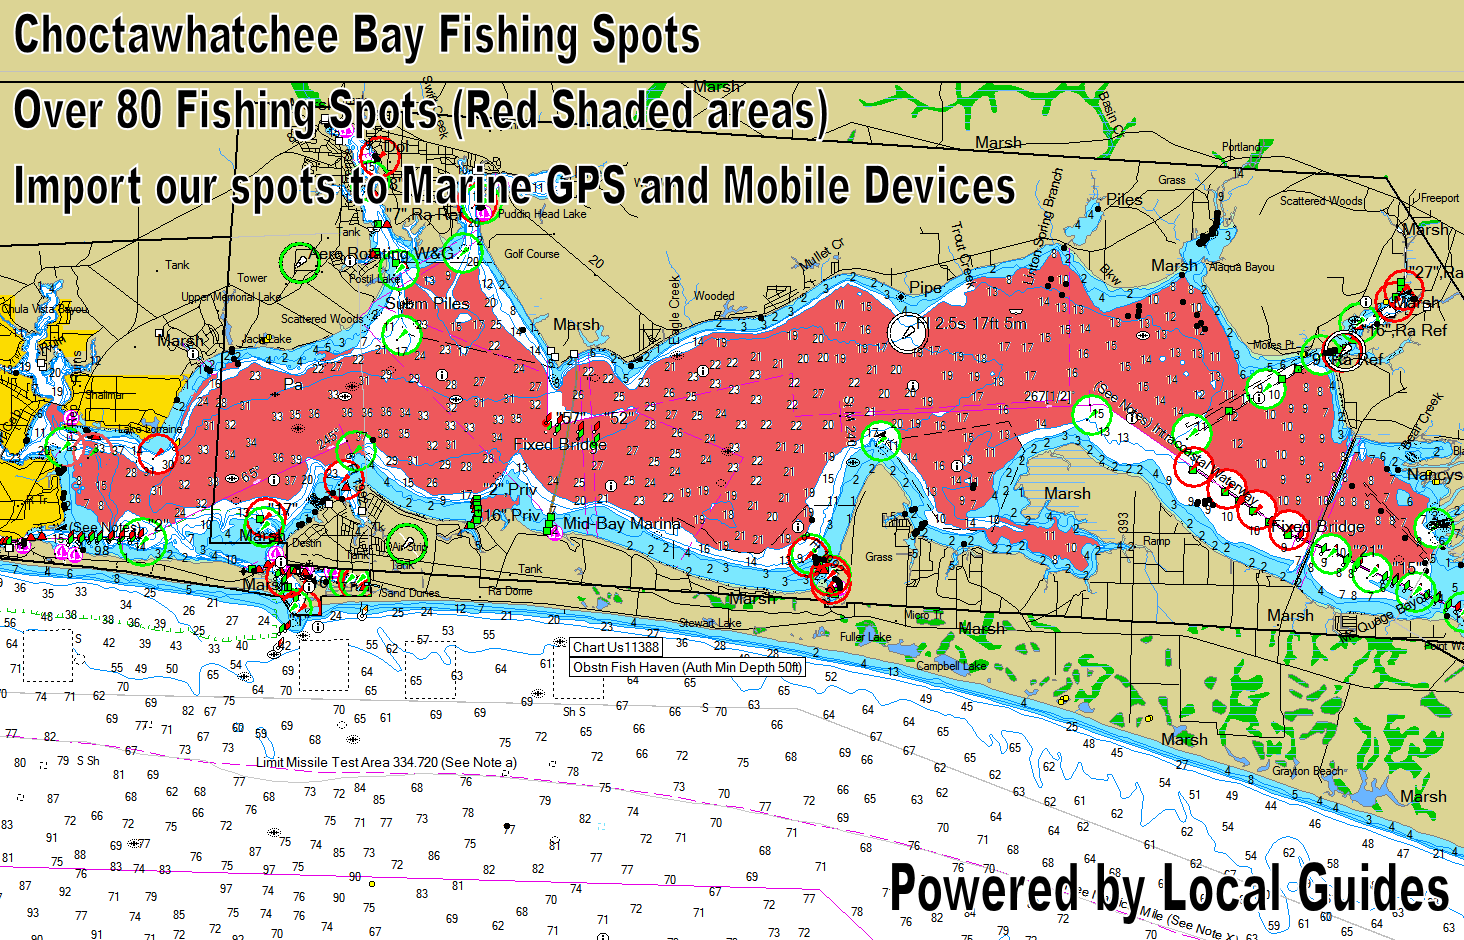 CHOCTAWATCHEE BAY FISHING SPOTS MAP 